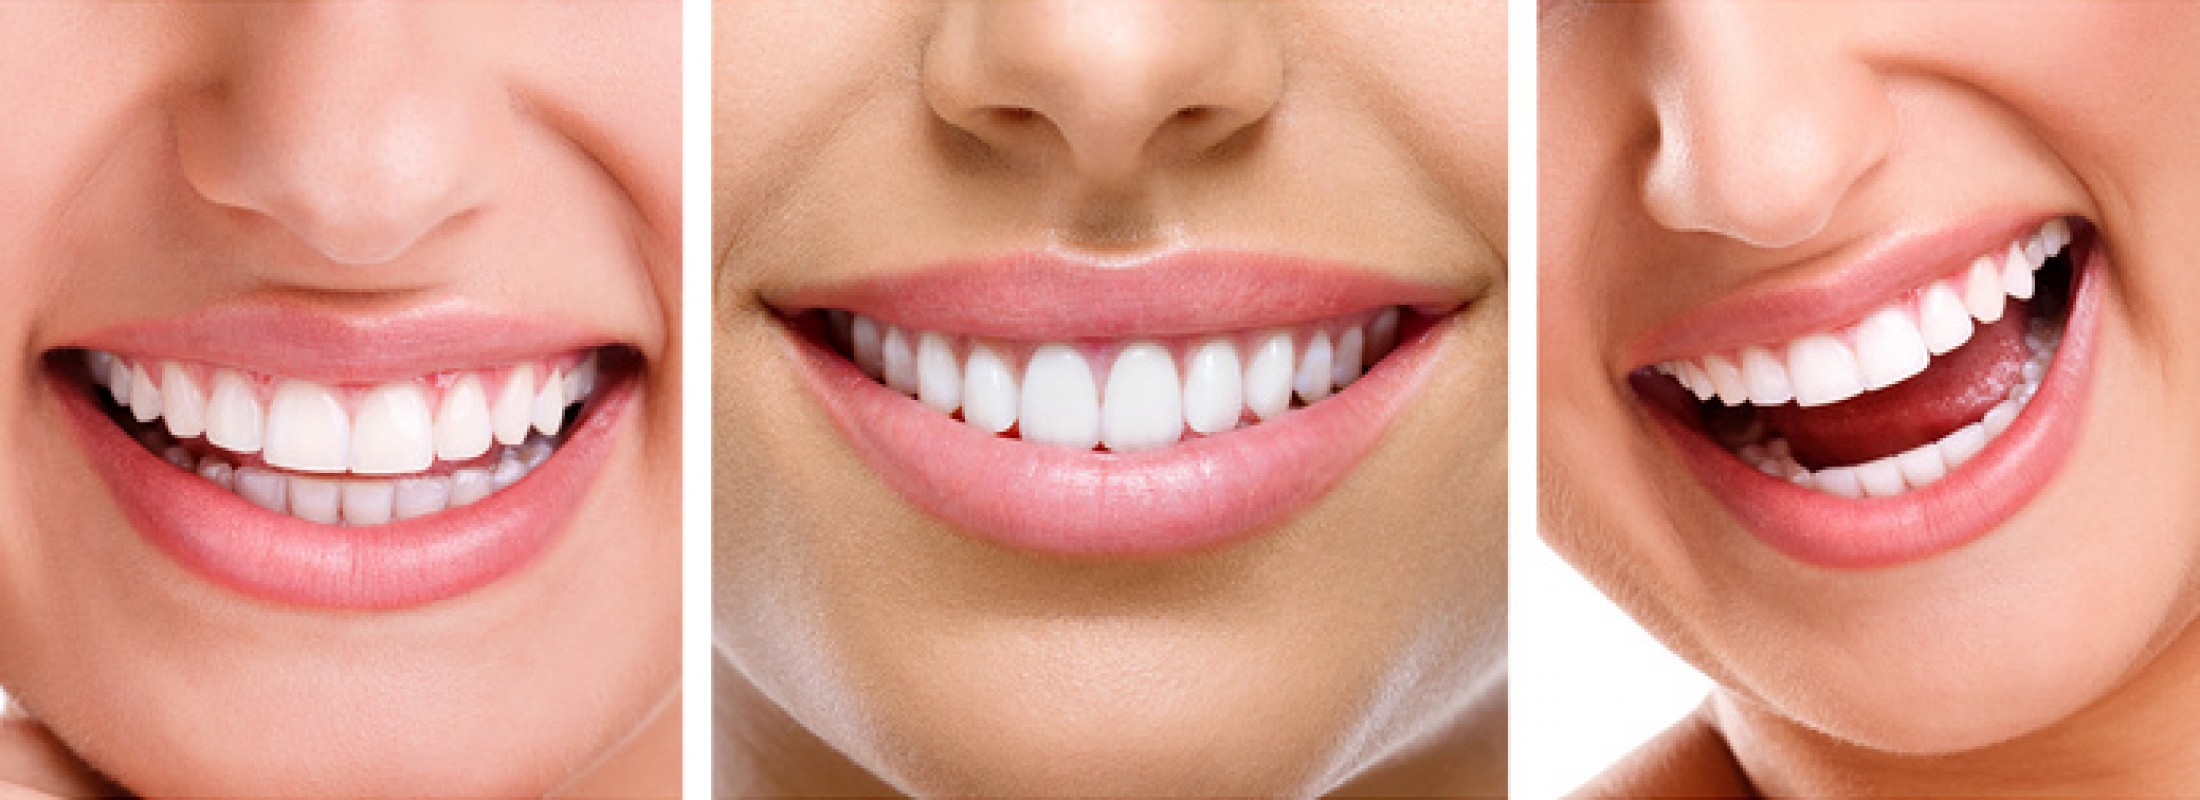 Estética dental: qué piden los argentinos para sonreír mejor